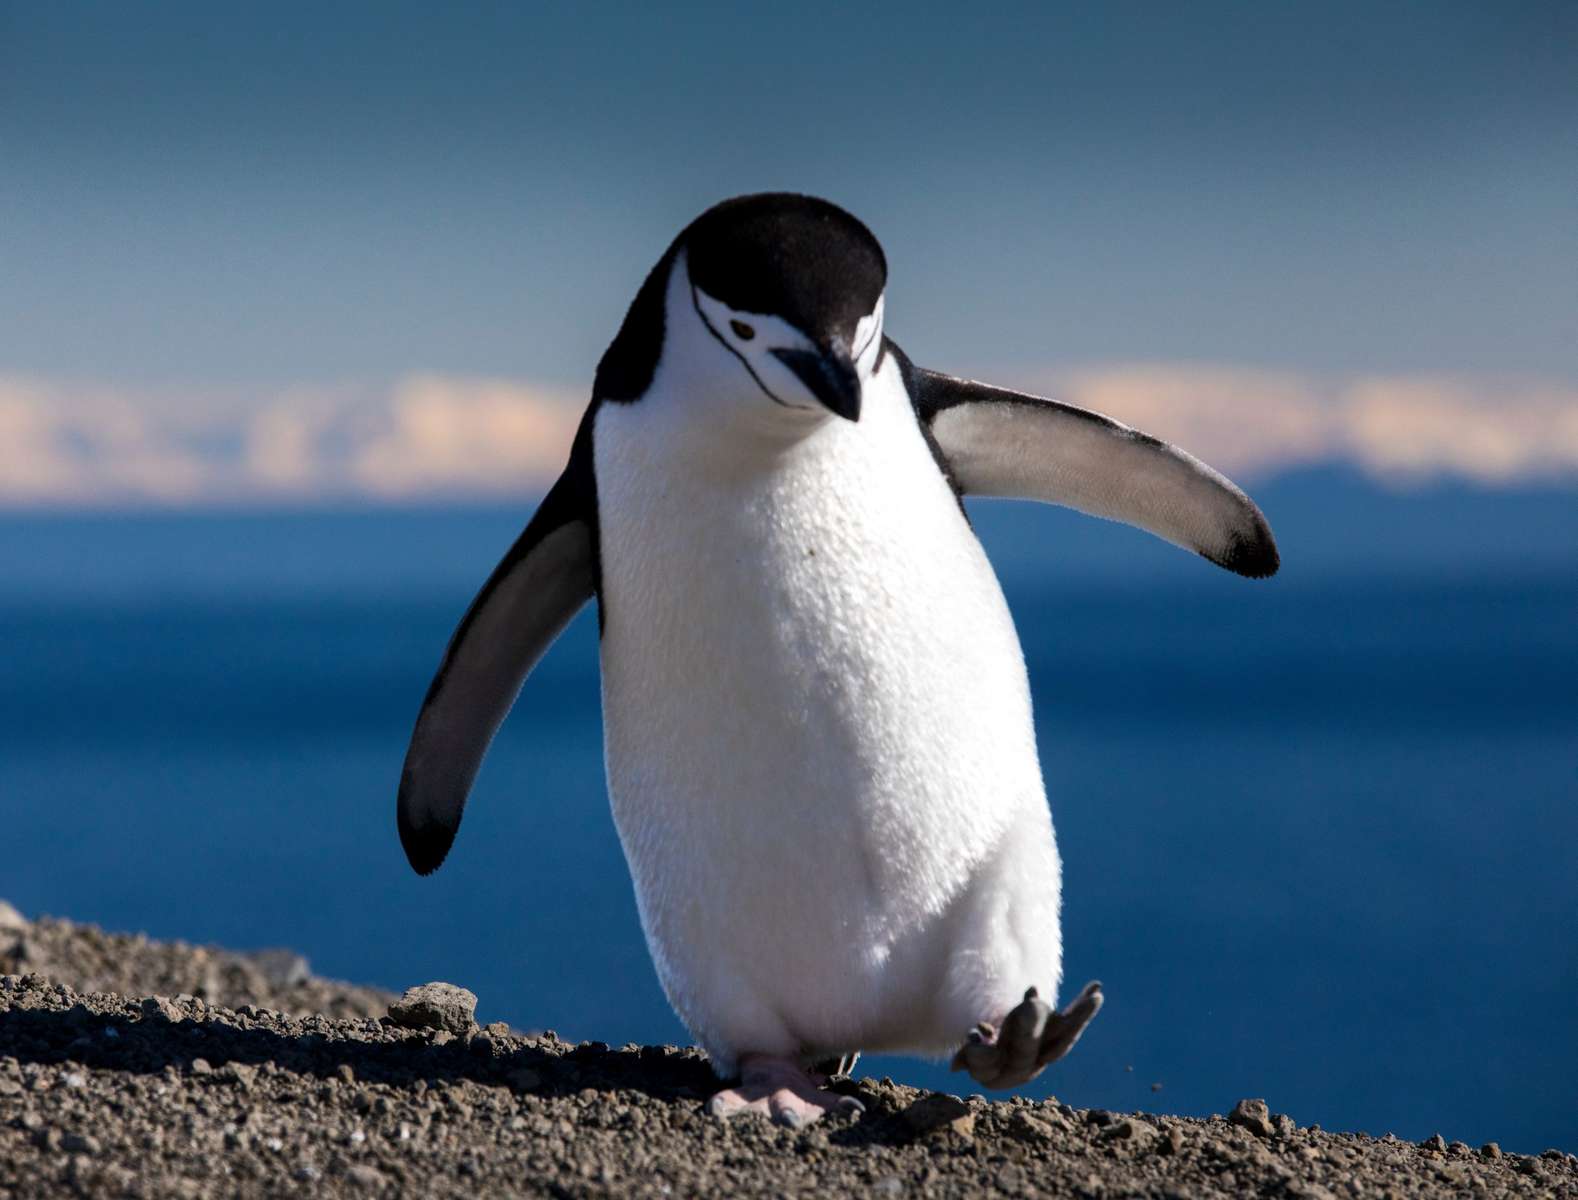 パズルペンギン 写真からオンラインパズル